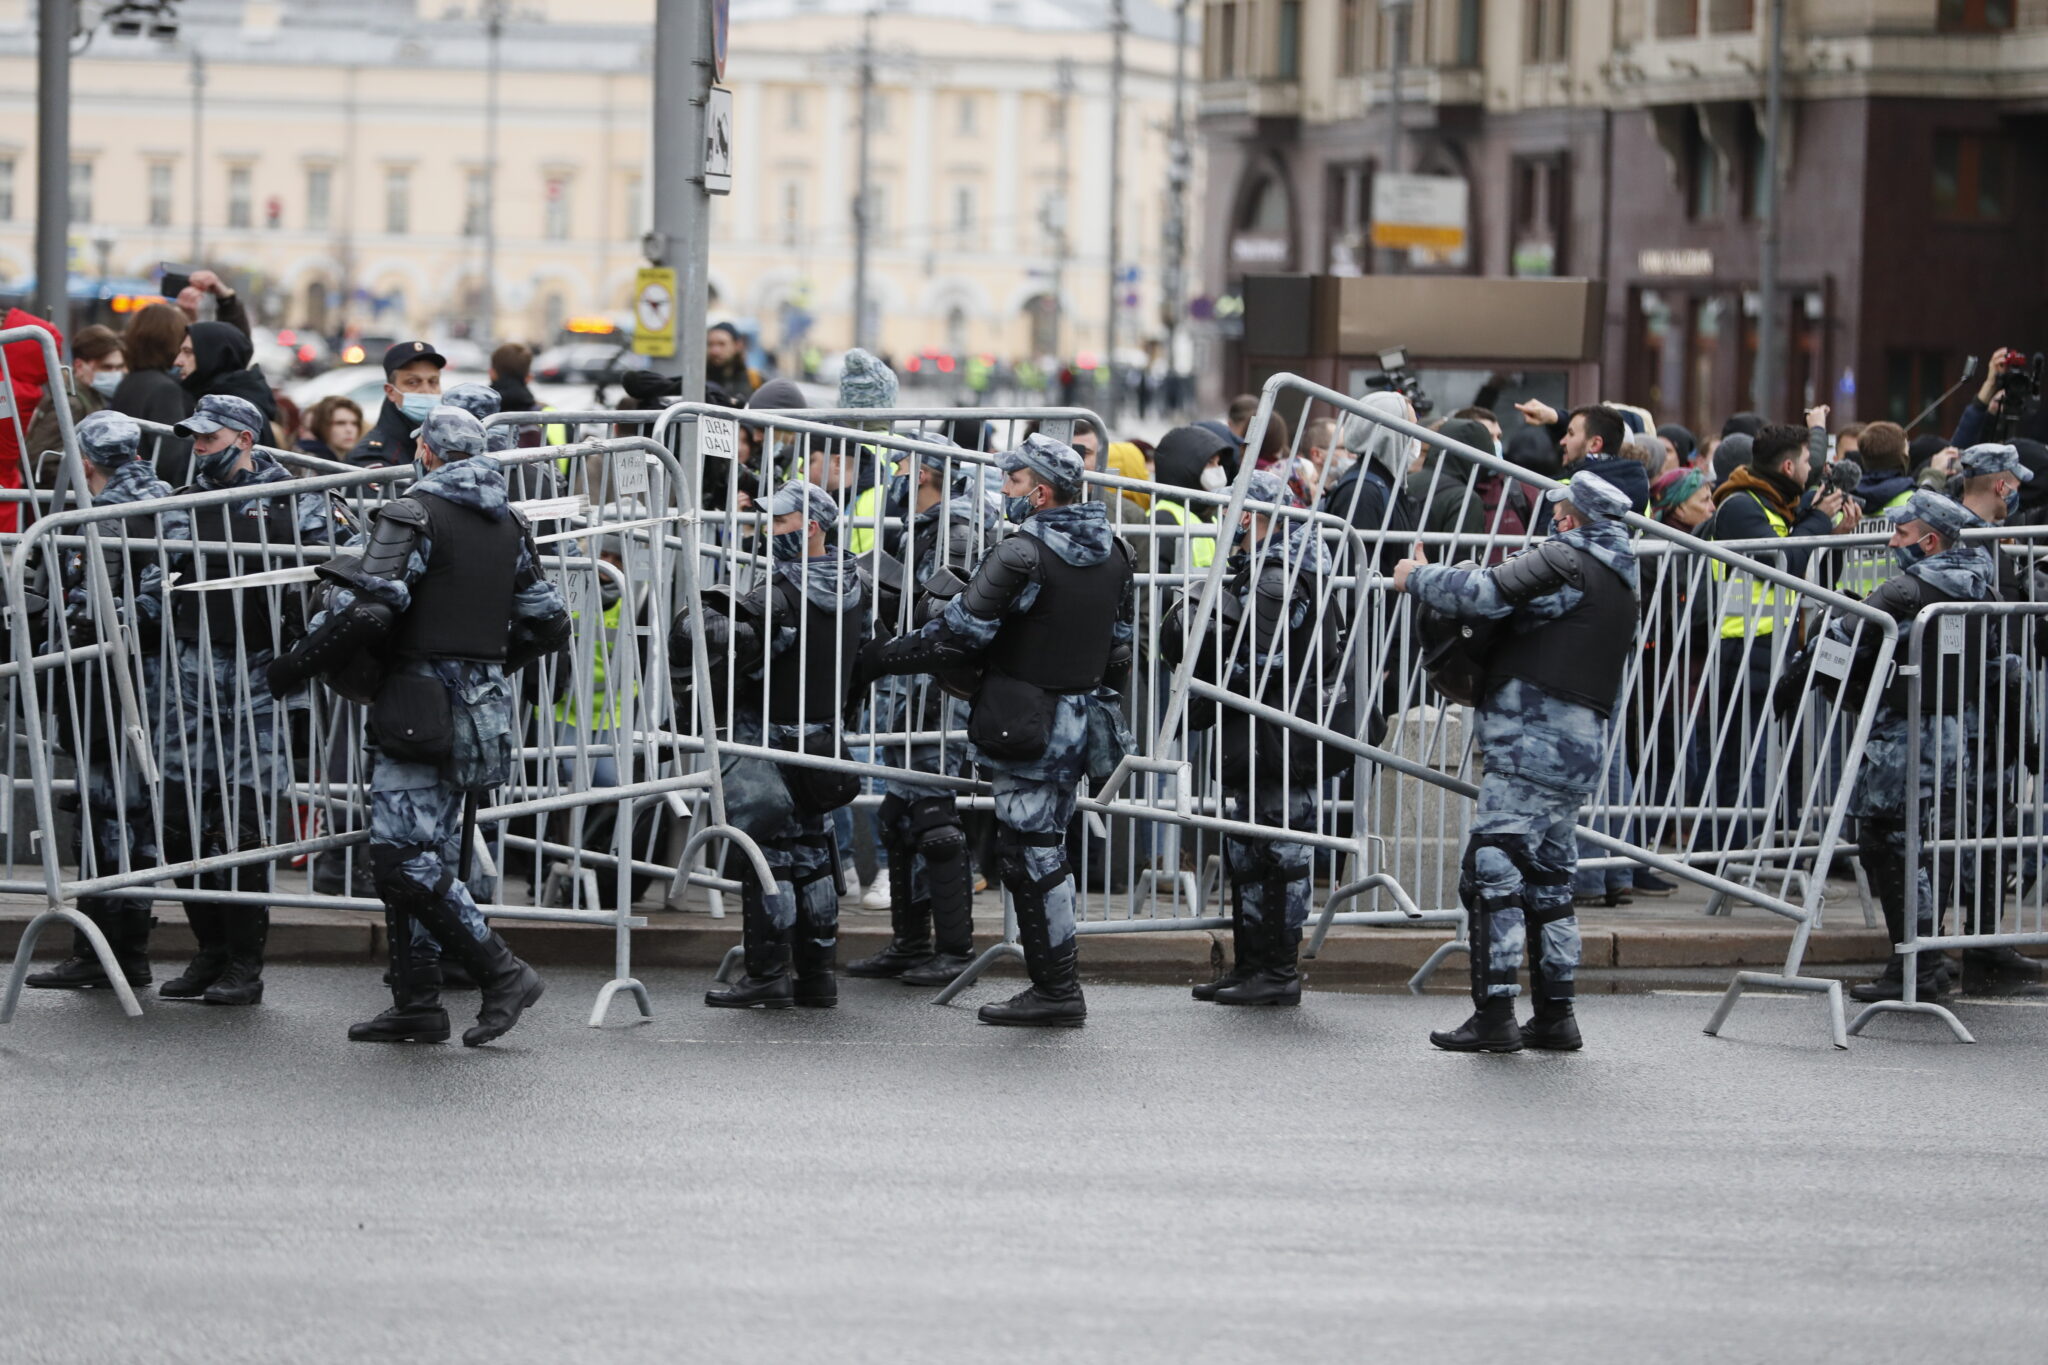 Полиция устанавливает ограждения перед акцией в Москве. Фото   EPA/YURI KOCHETKOV/Scanpix/Leta